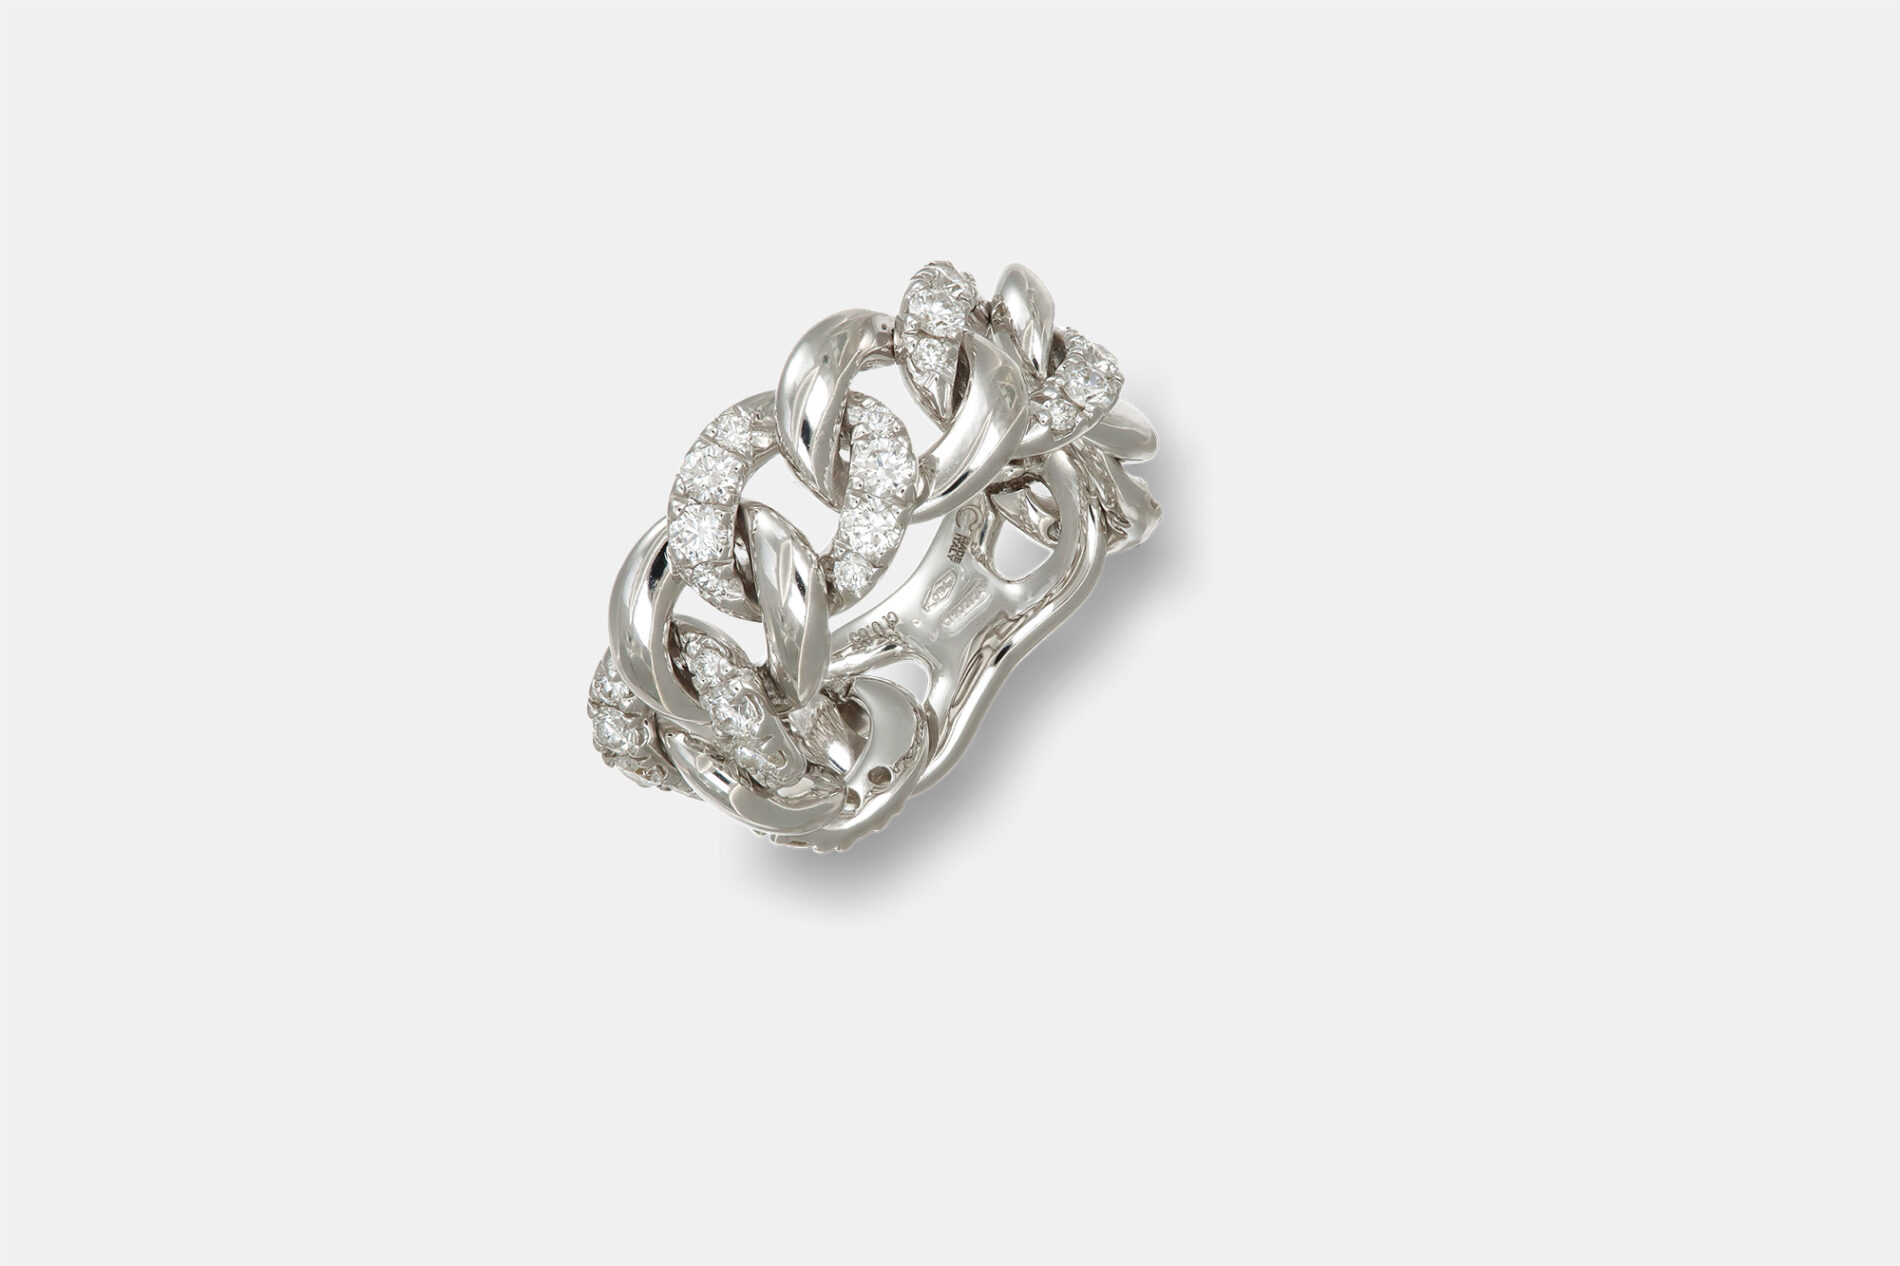 Crivelli anello maglia flessibile groumette - Gioielleria Casavola di Noci - idee regalo compleanno mamma 50 anni - caratura 085 ct